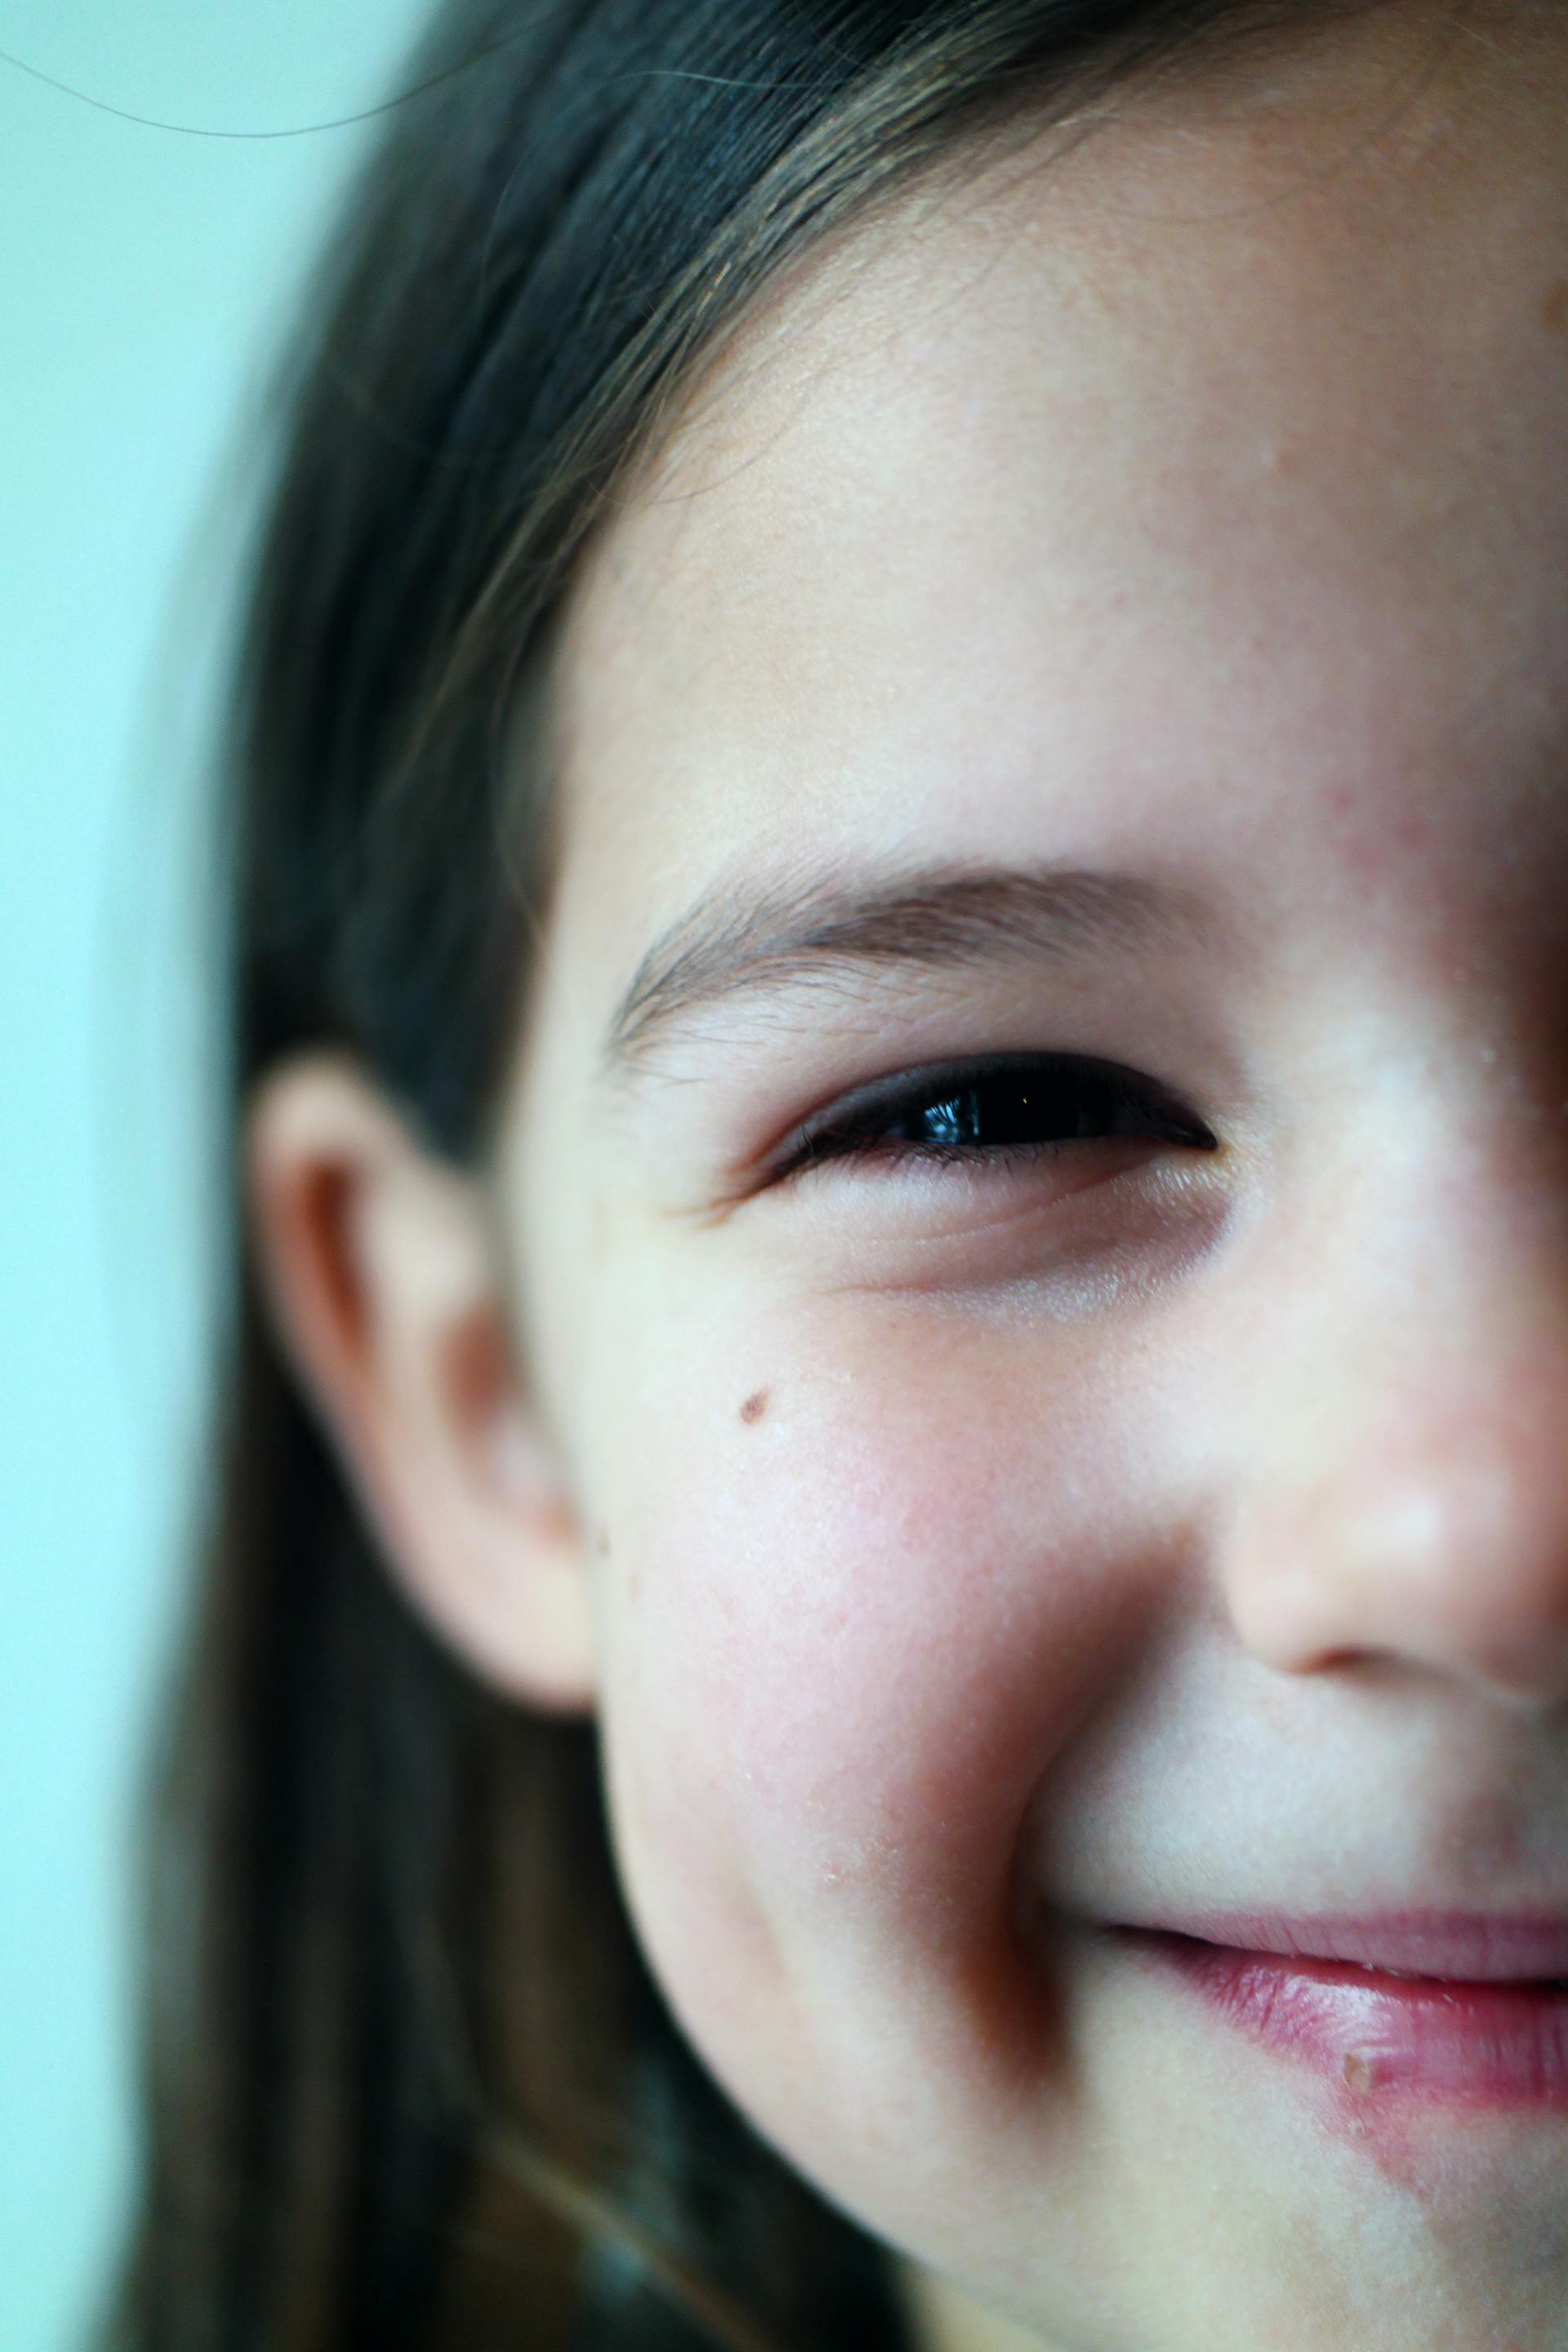 Ein lächelndes kleines Mädchen | Quelle: Pexels